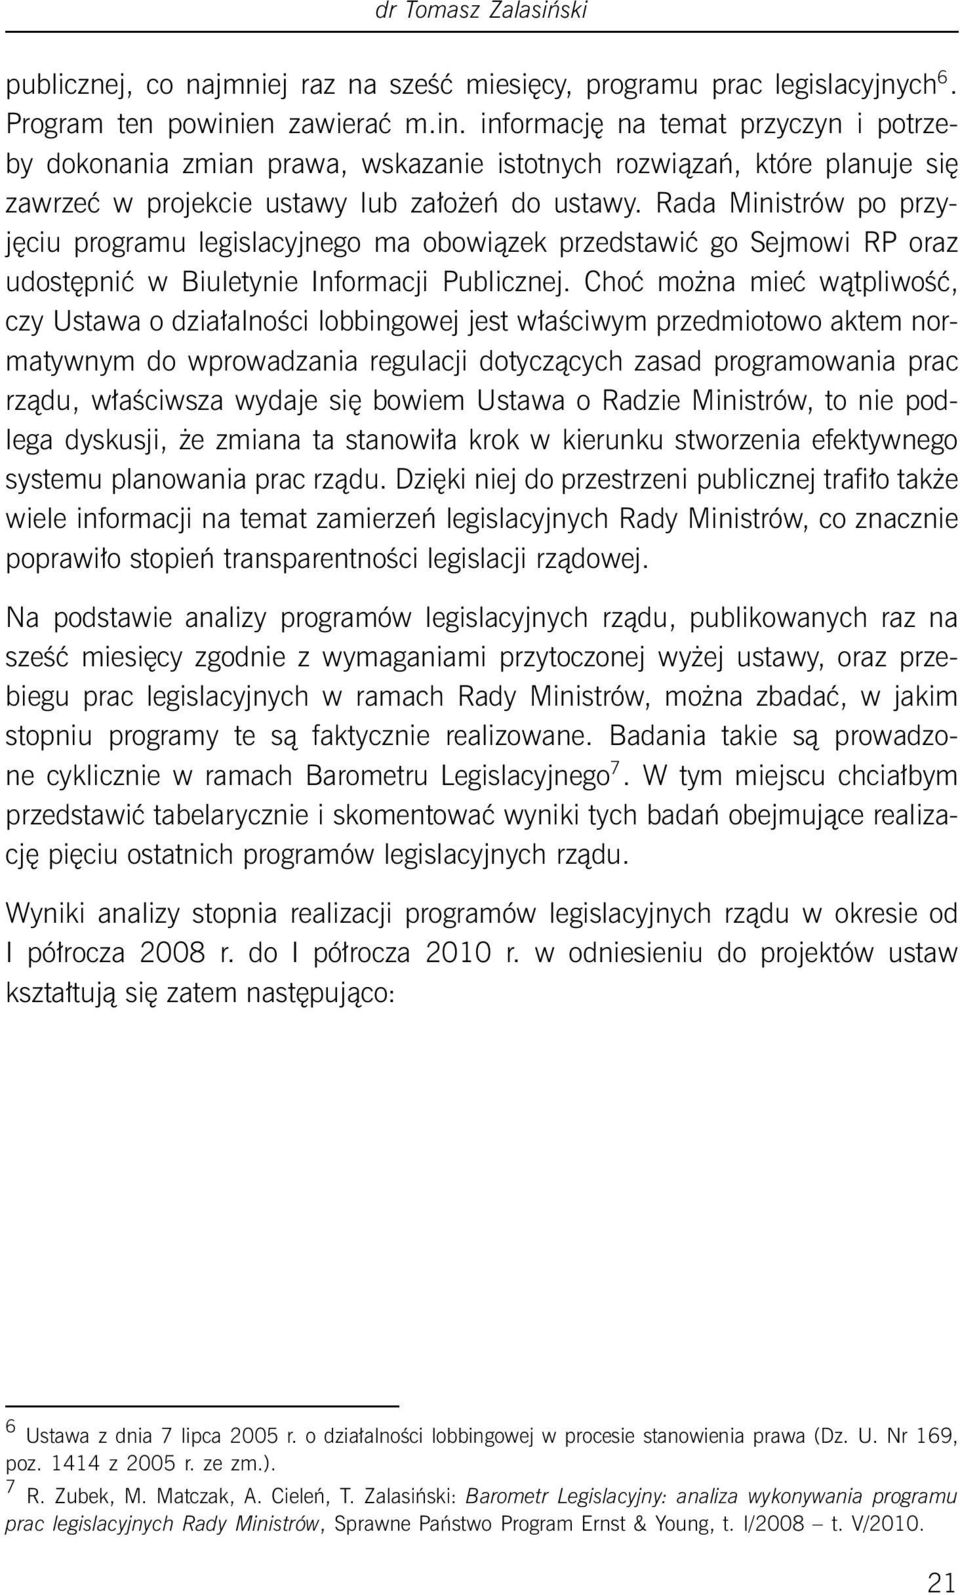 Rada Ministrów po przyjęciu programu legislacyjnego ma obowiązek przedstawić go Sejmowi RP oraz udostępnić w Biuletynie Informacji Publicznej.